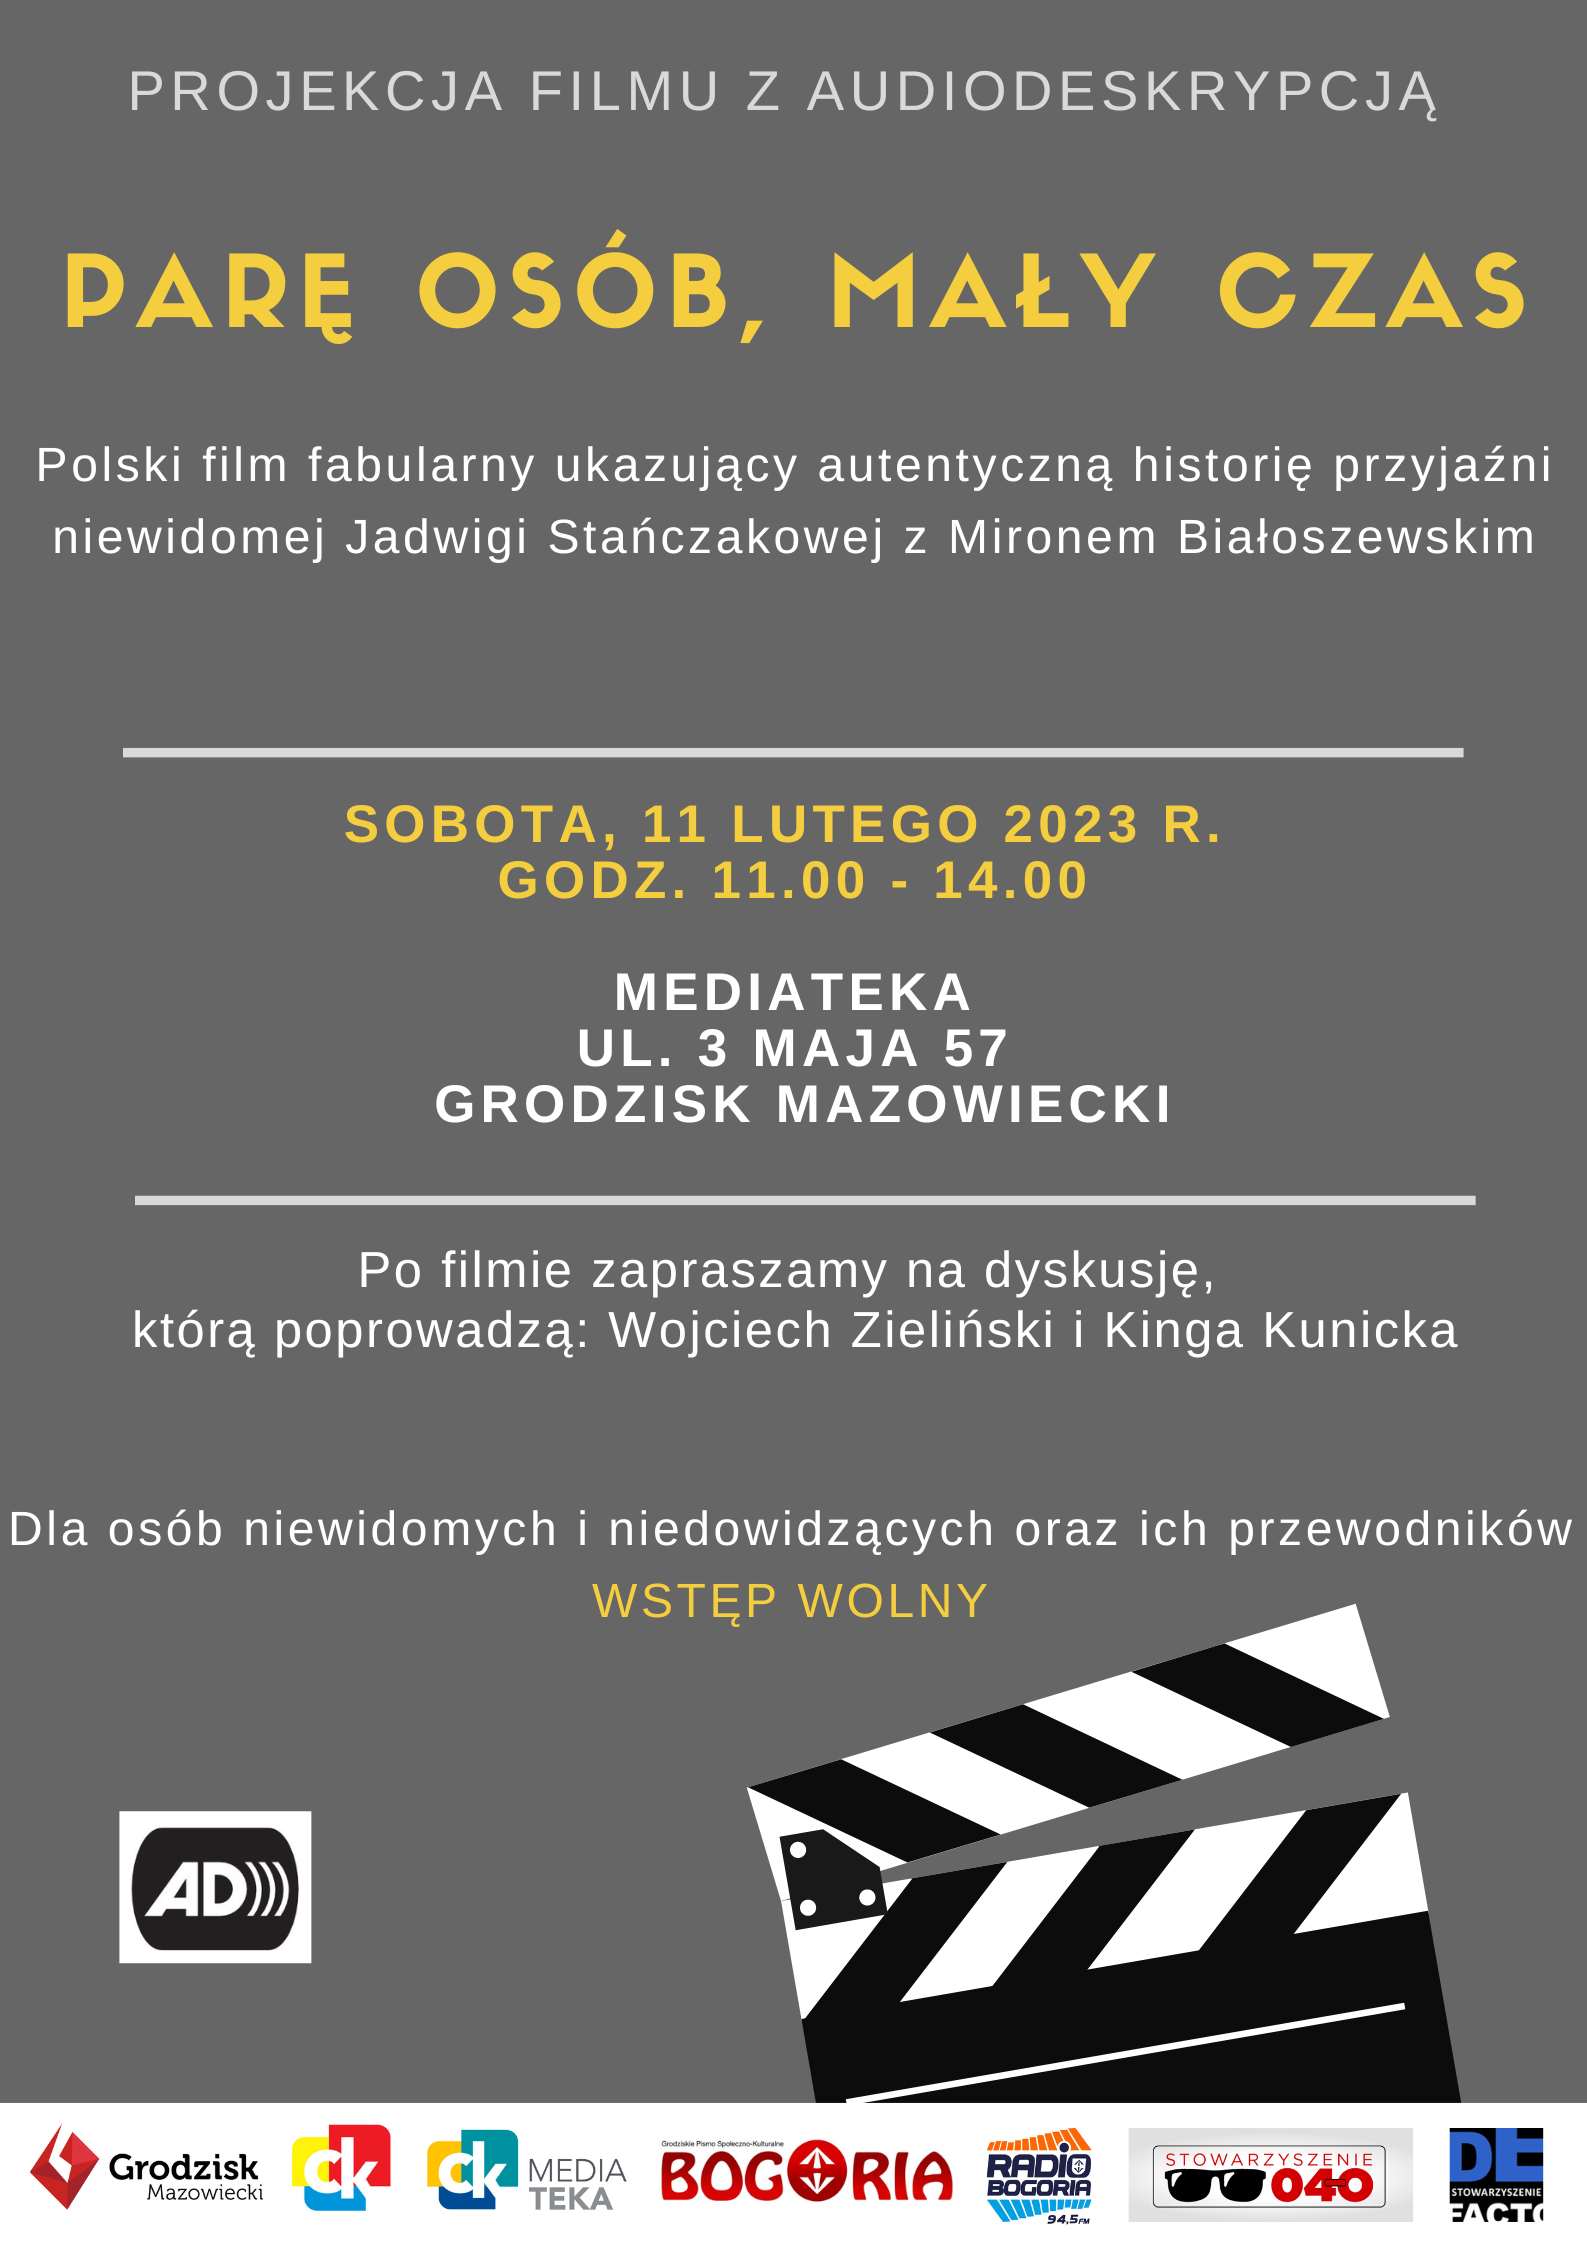 Plakat informujący o projekcji filmu z aduiodeskrypcją "Parę osób, mały czas"